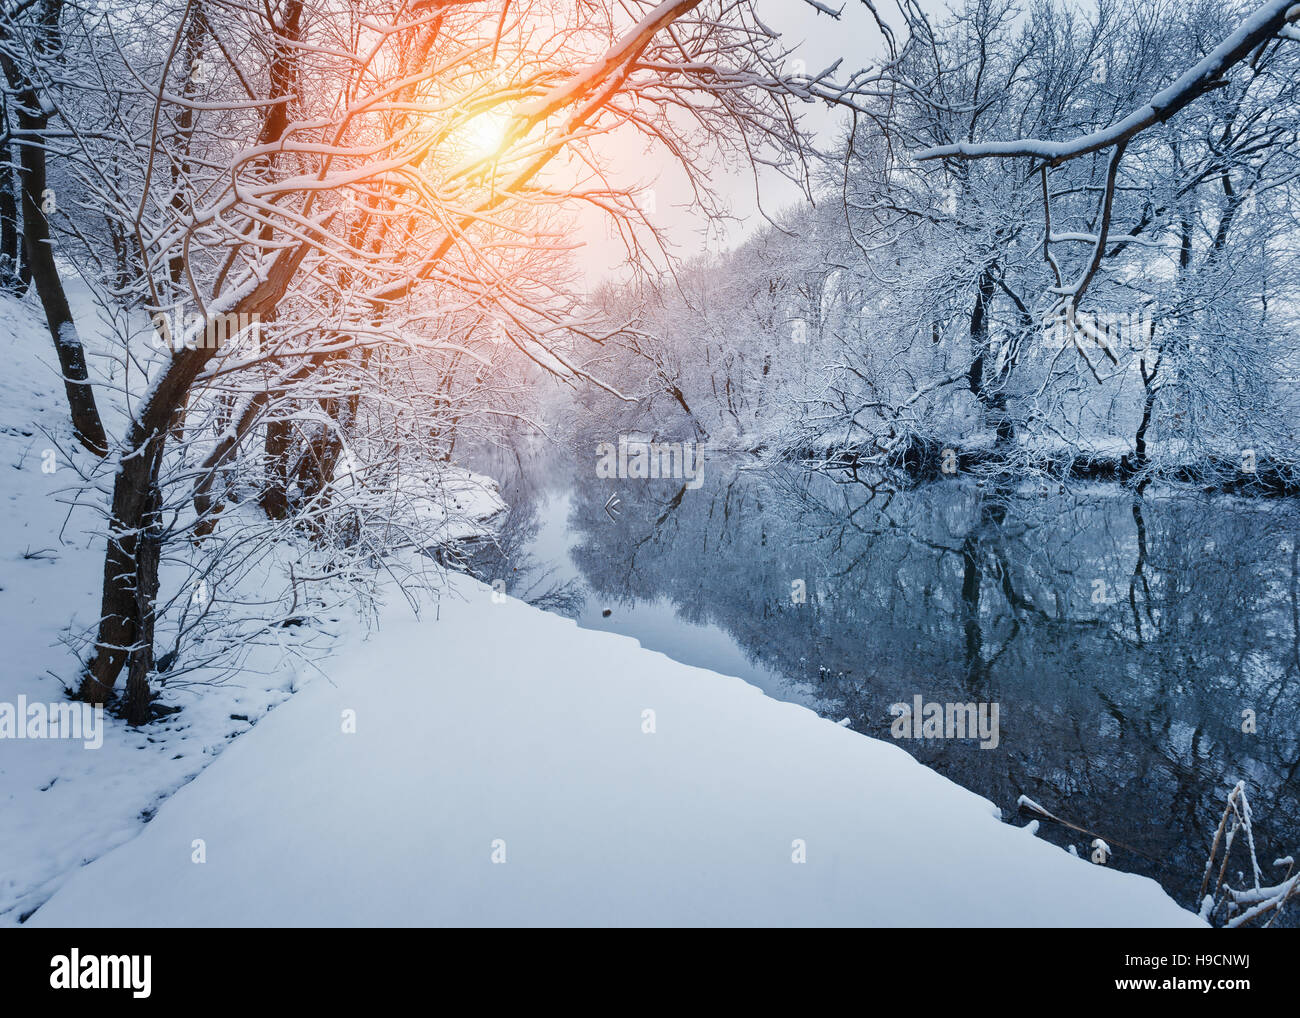 Forêt d'hiver sur la rivière au coucher du soleil. Paysage coloré avec snowy trees, rivière gelée avec la réflexion dans l'eau Banque D'Images